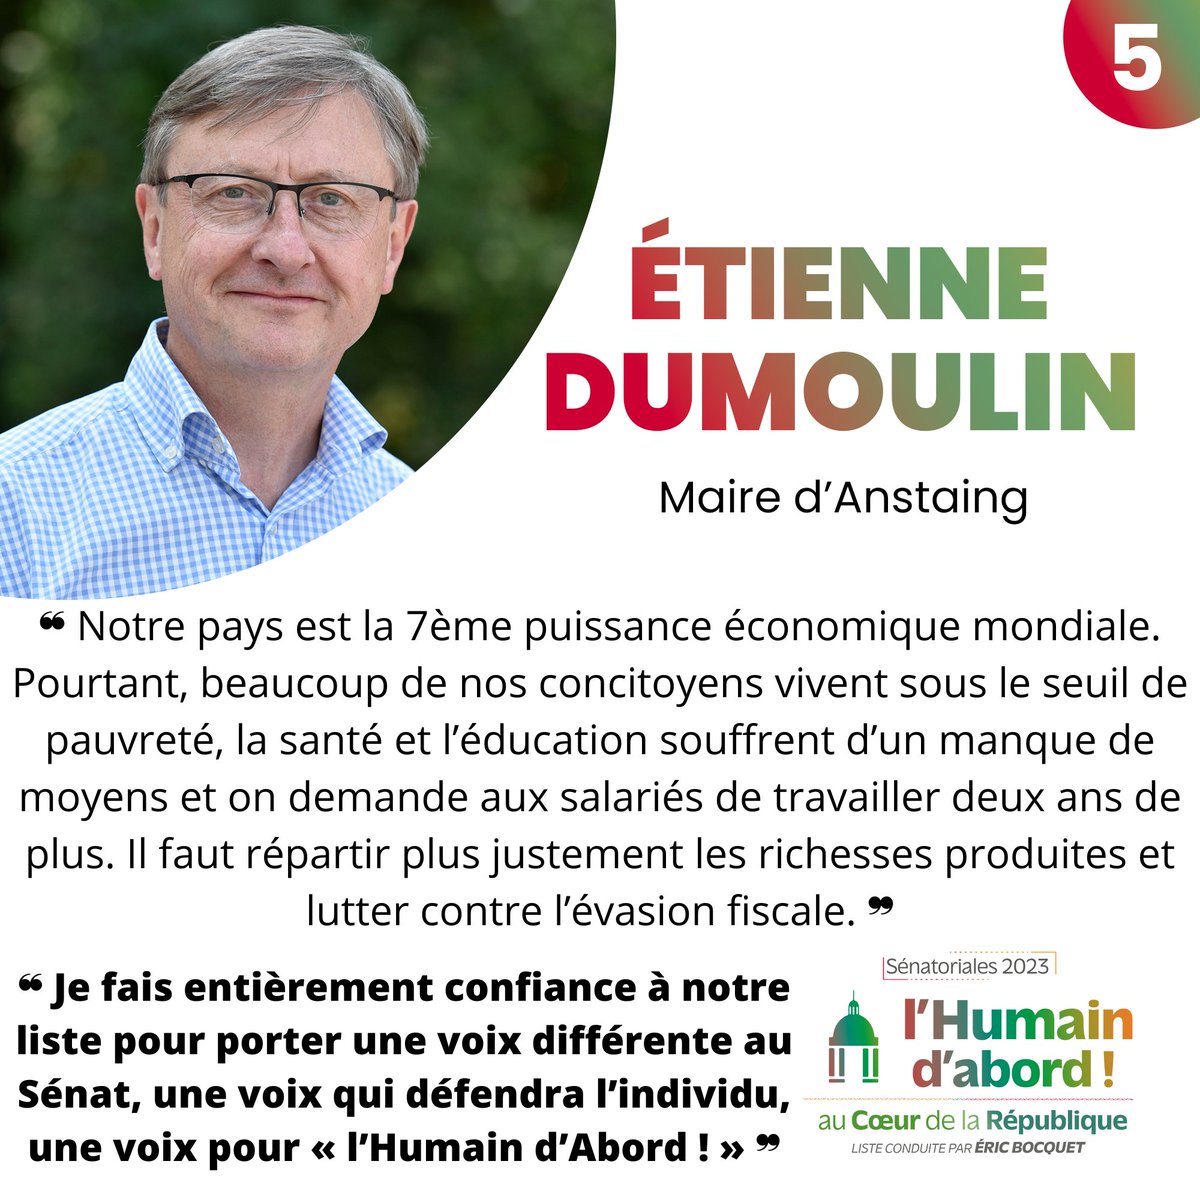 𝐉-𝟖 𝐚𝐯𝐚𝐧𝐭 𝐥𝐞𝐬 𝐞́𝐥𝐞𝐜𝐭𝐢𝐨𝐧𝐬 𝐬𝐞́𝐧𝐚𝐭𝐨𝐫𝐢𝐚𝐥𝐞𝐬 !
Etienne Dumoulin rappelle que 'l'Humain d'abord !', loin d'être un simple slogan, est l'expression d'un objectif à atteindre, d'un modèle idéal de société pour notre liste.
#Sénatoriales #nord #lHumainDabord